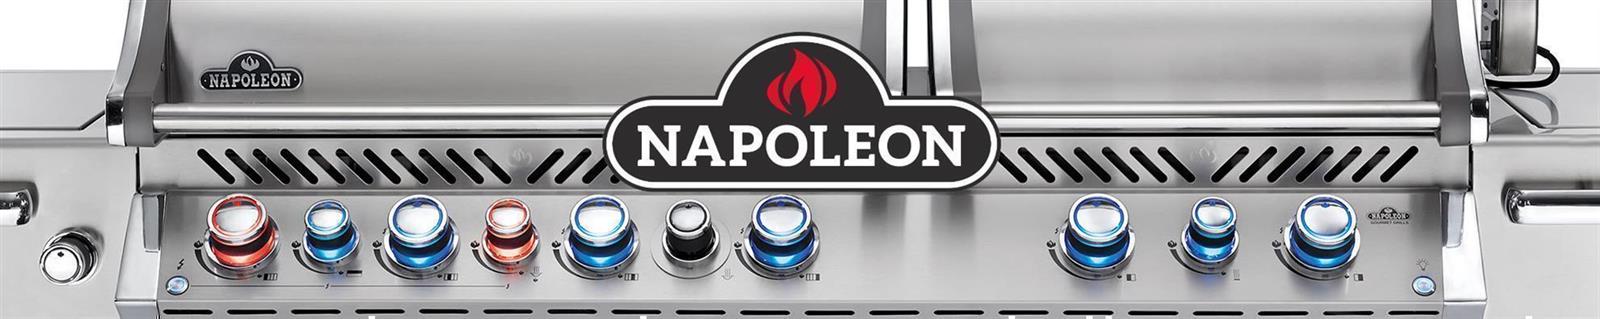 Napoleon - Prestige Pro 500, Erdgas, Edelstahl, Einbau, inkl. Drehspieß